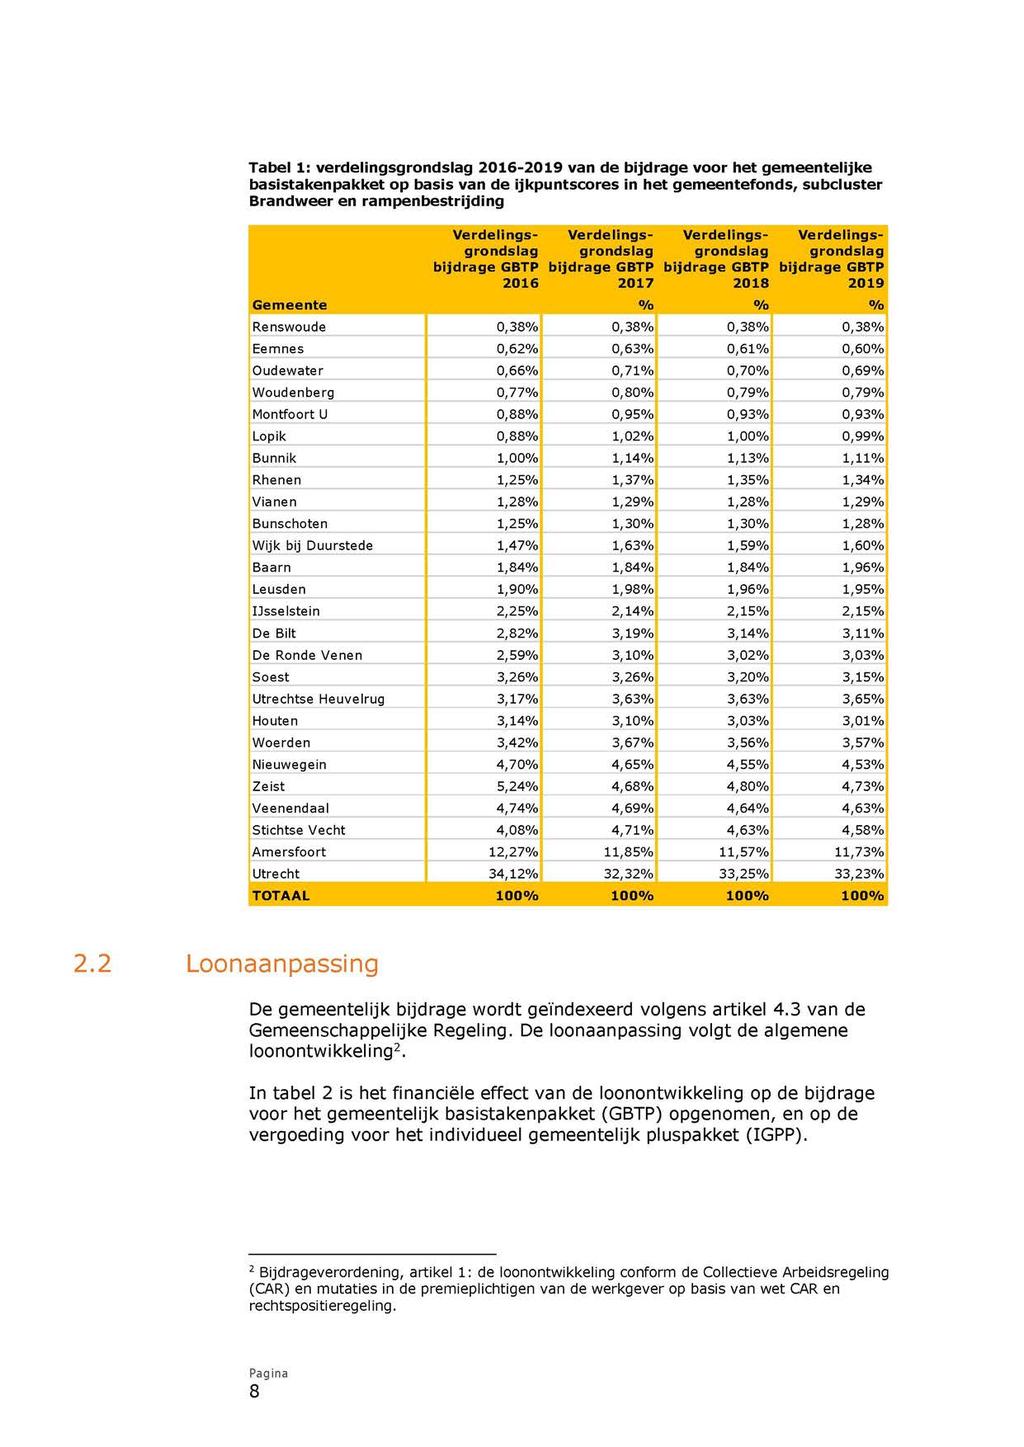 Tabel 1: verdelingsgrondslag 2016-2019 van de bijdrage voor het gemeentelijke basistakenpakket op basis van de ijkpuntscores in het gemeentefonds, subcluster Brandweer en rampenbestrijding